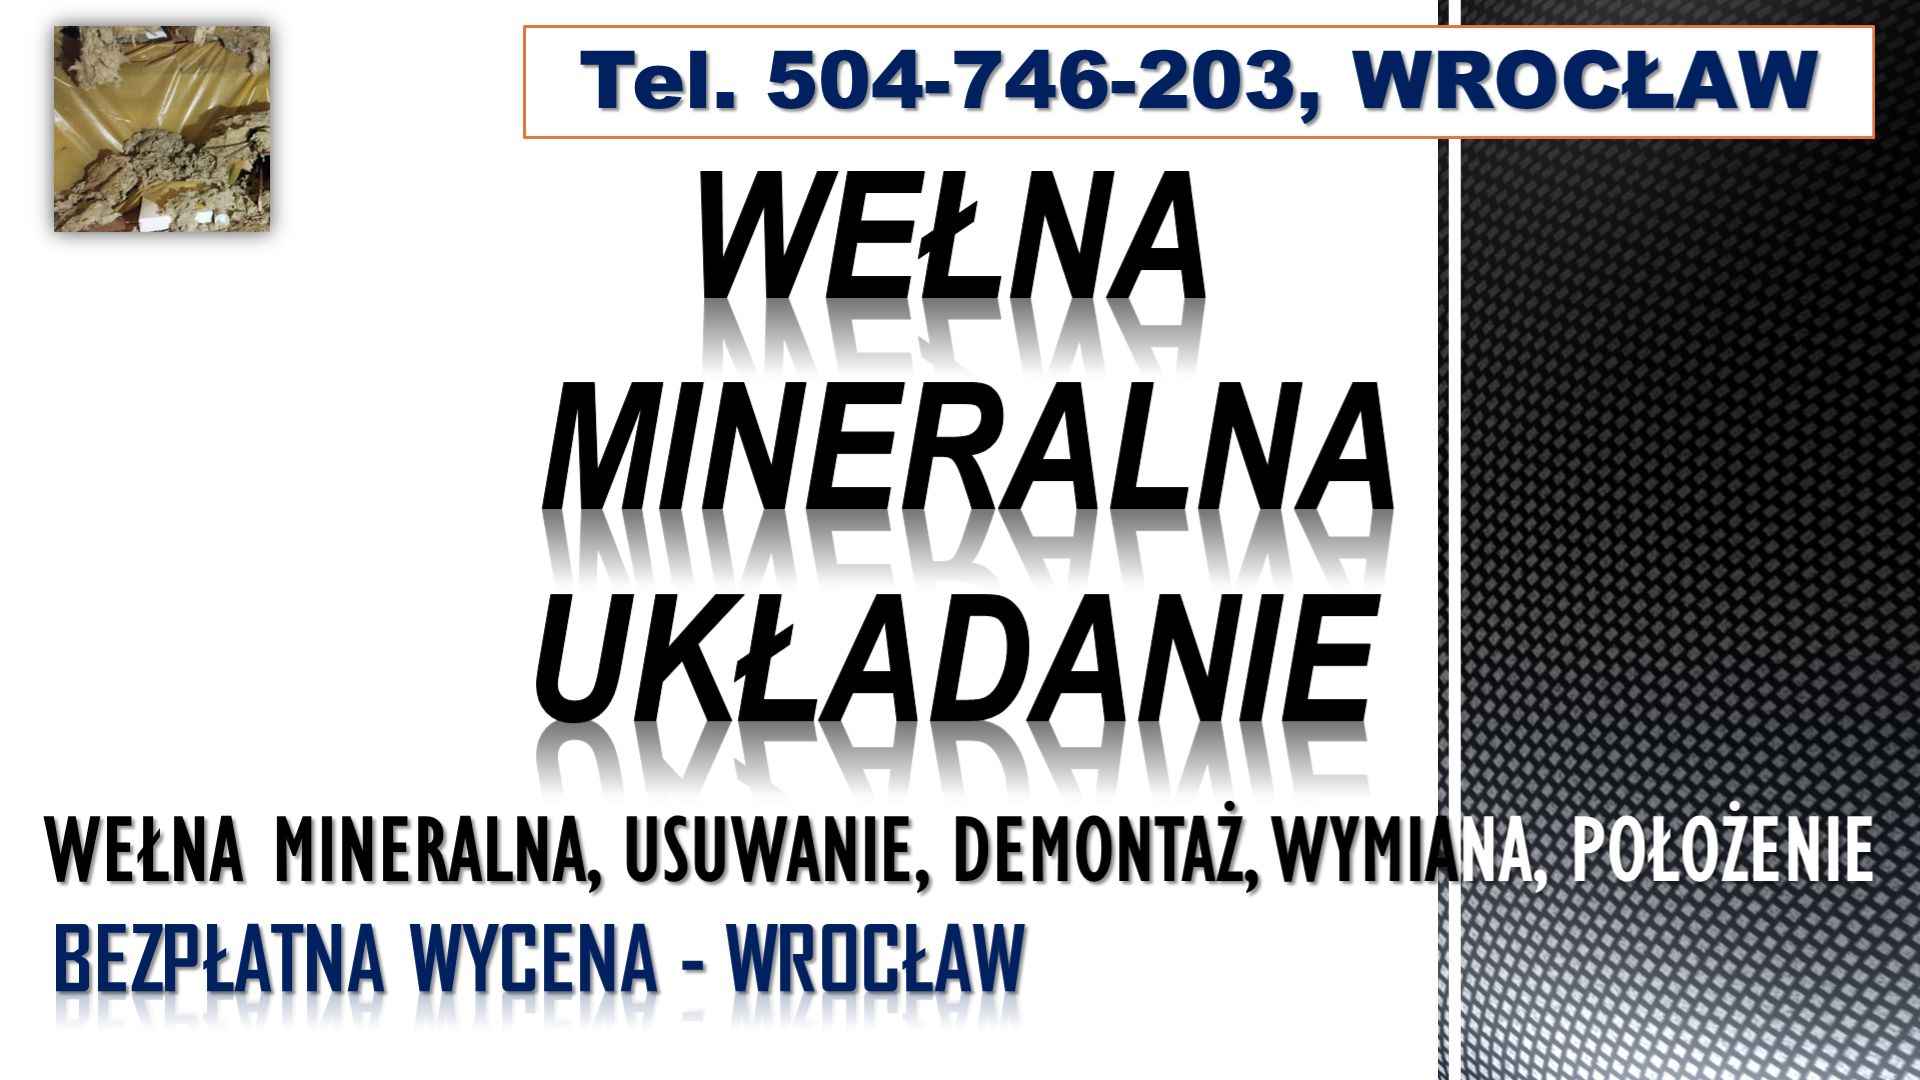 Usuwanie wełny mineralnej, cena, tel. 504-746-203. Wrocław, demontaż, Psie Pole - zdjęcie 2